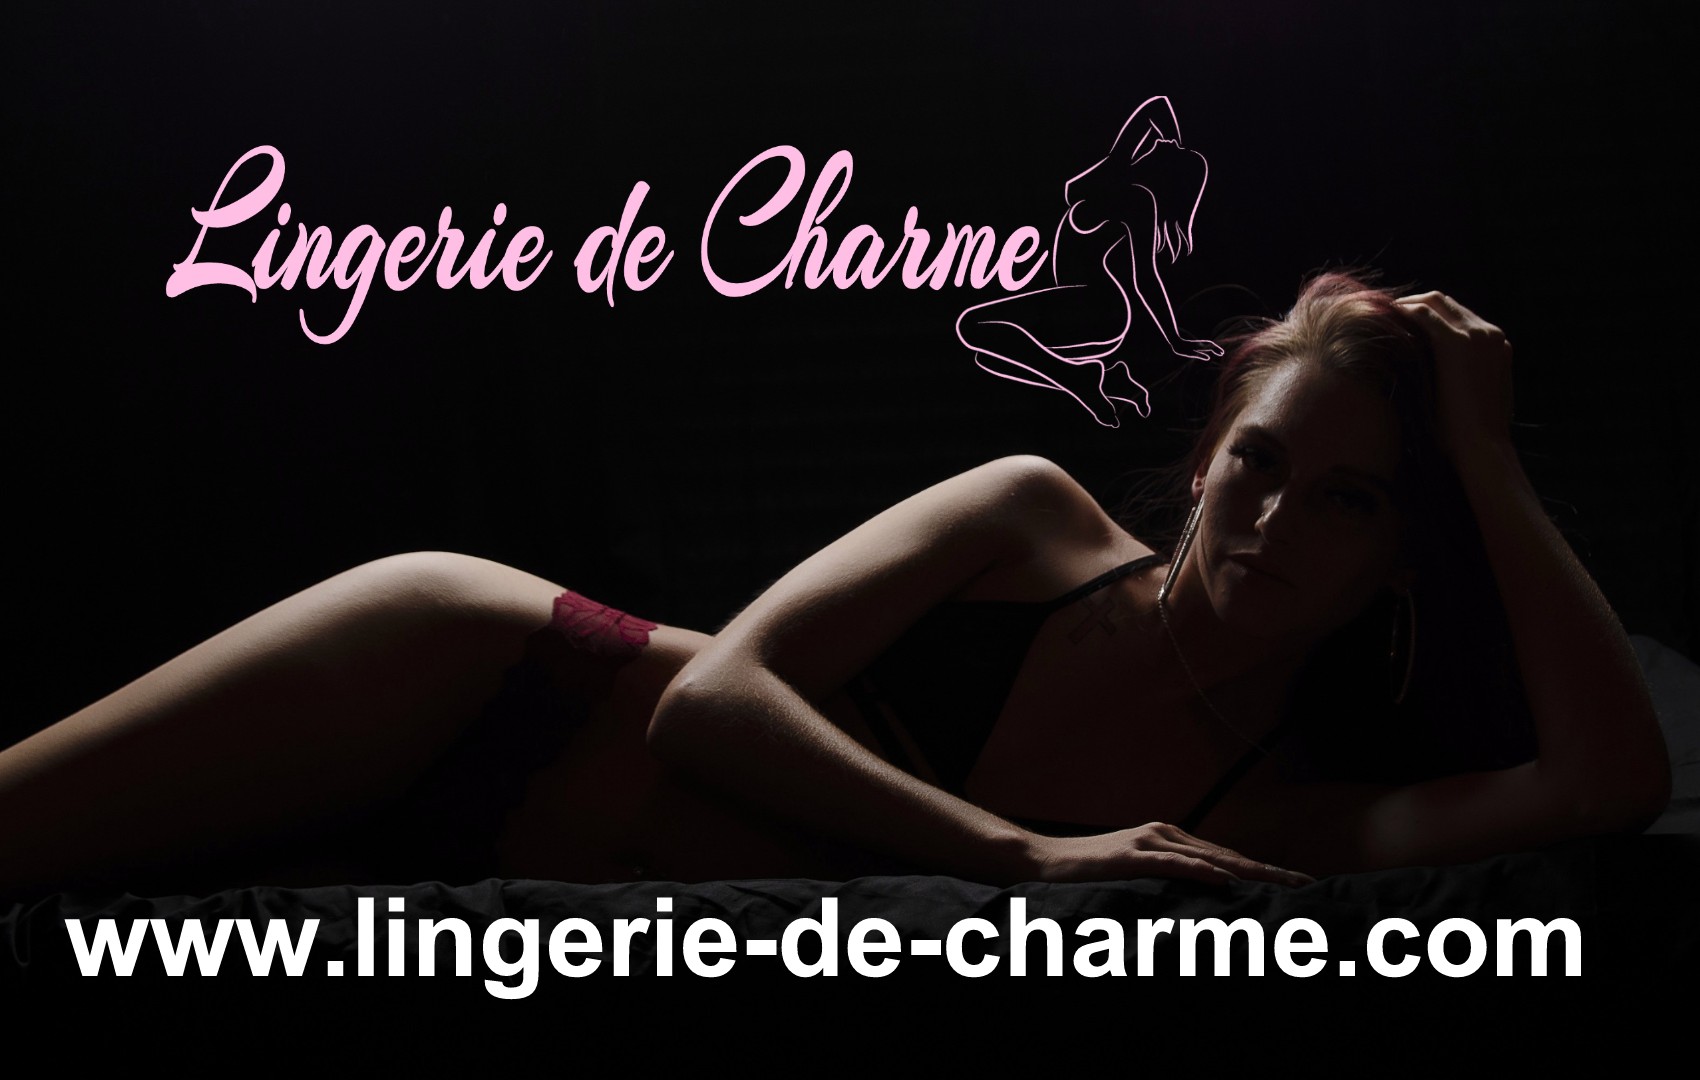 LINGERIE DE CHARME ALLOUE 16 - LINGERIE SEXY ALLOUE 16